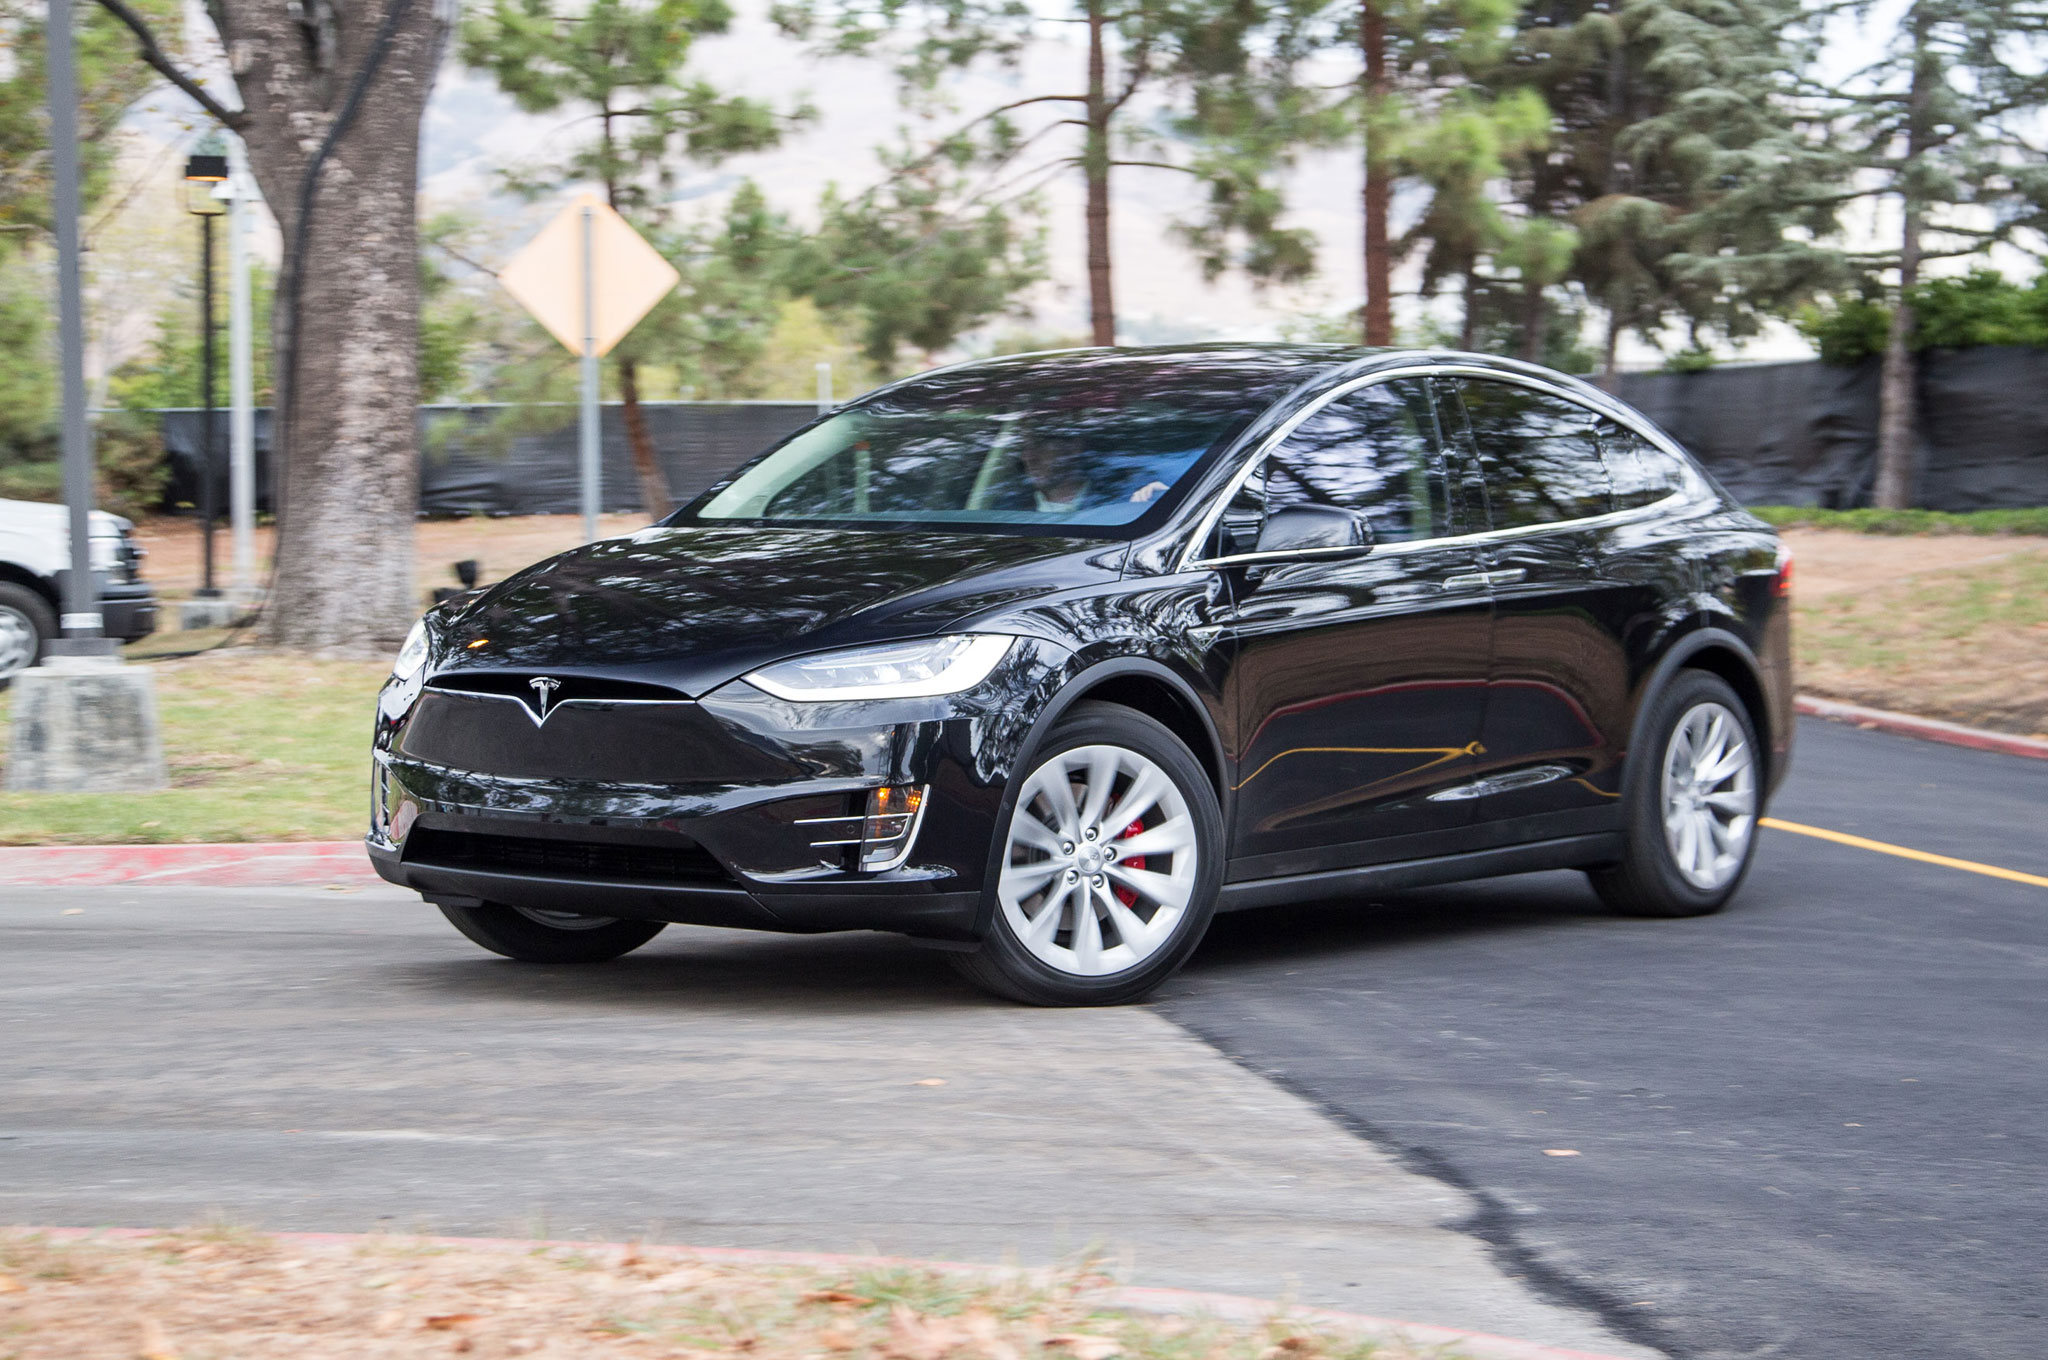 Базовый Tesla Model X получил батарею повышенной ёмкости